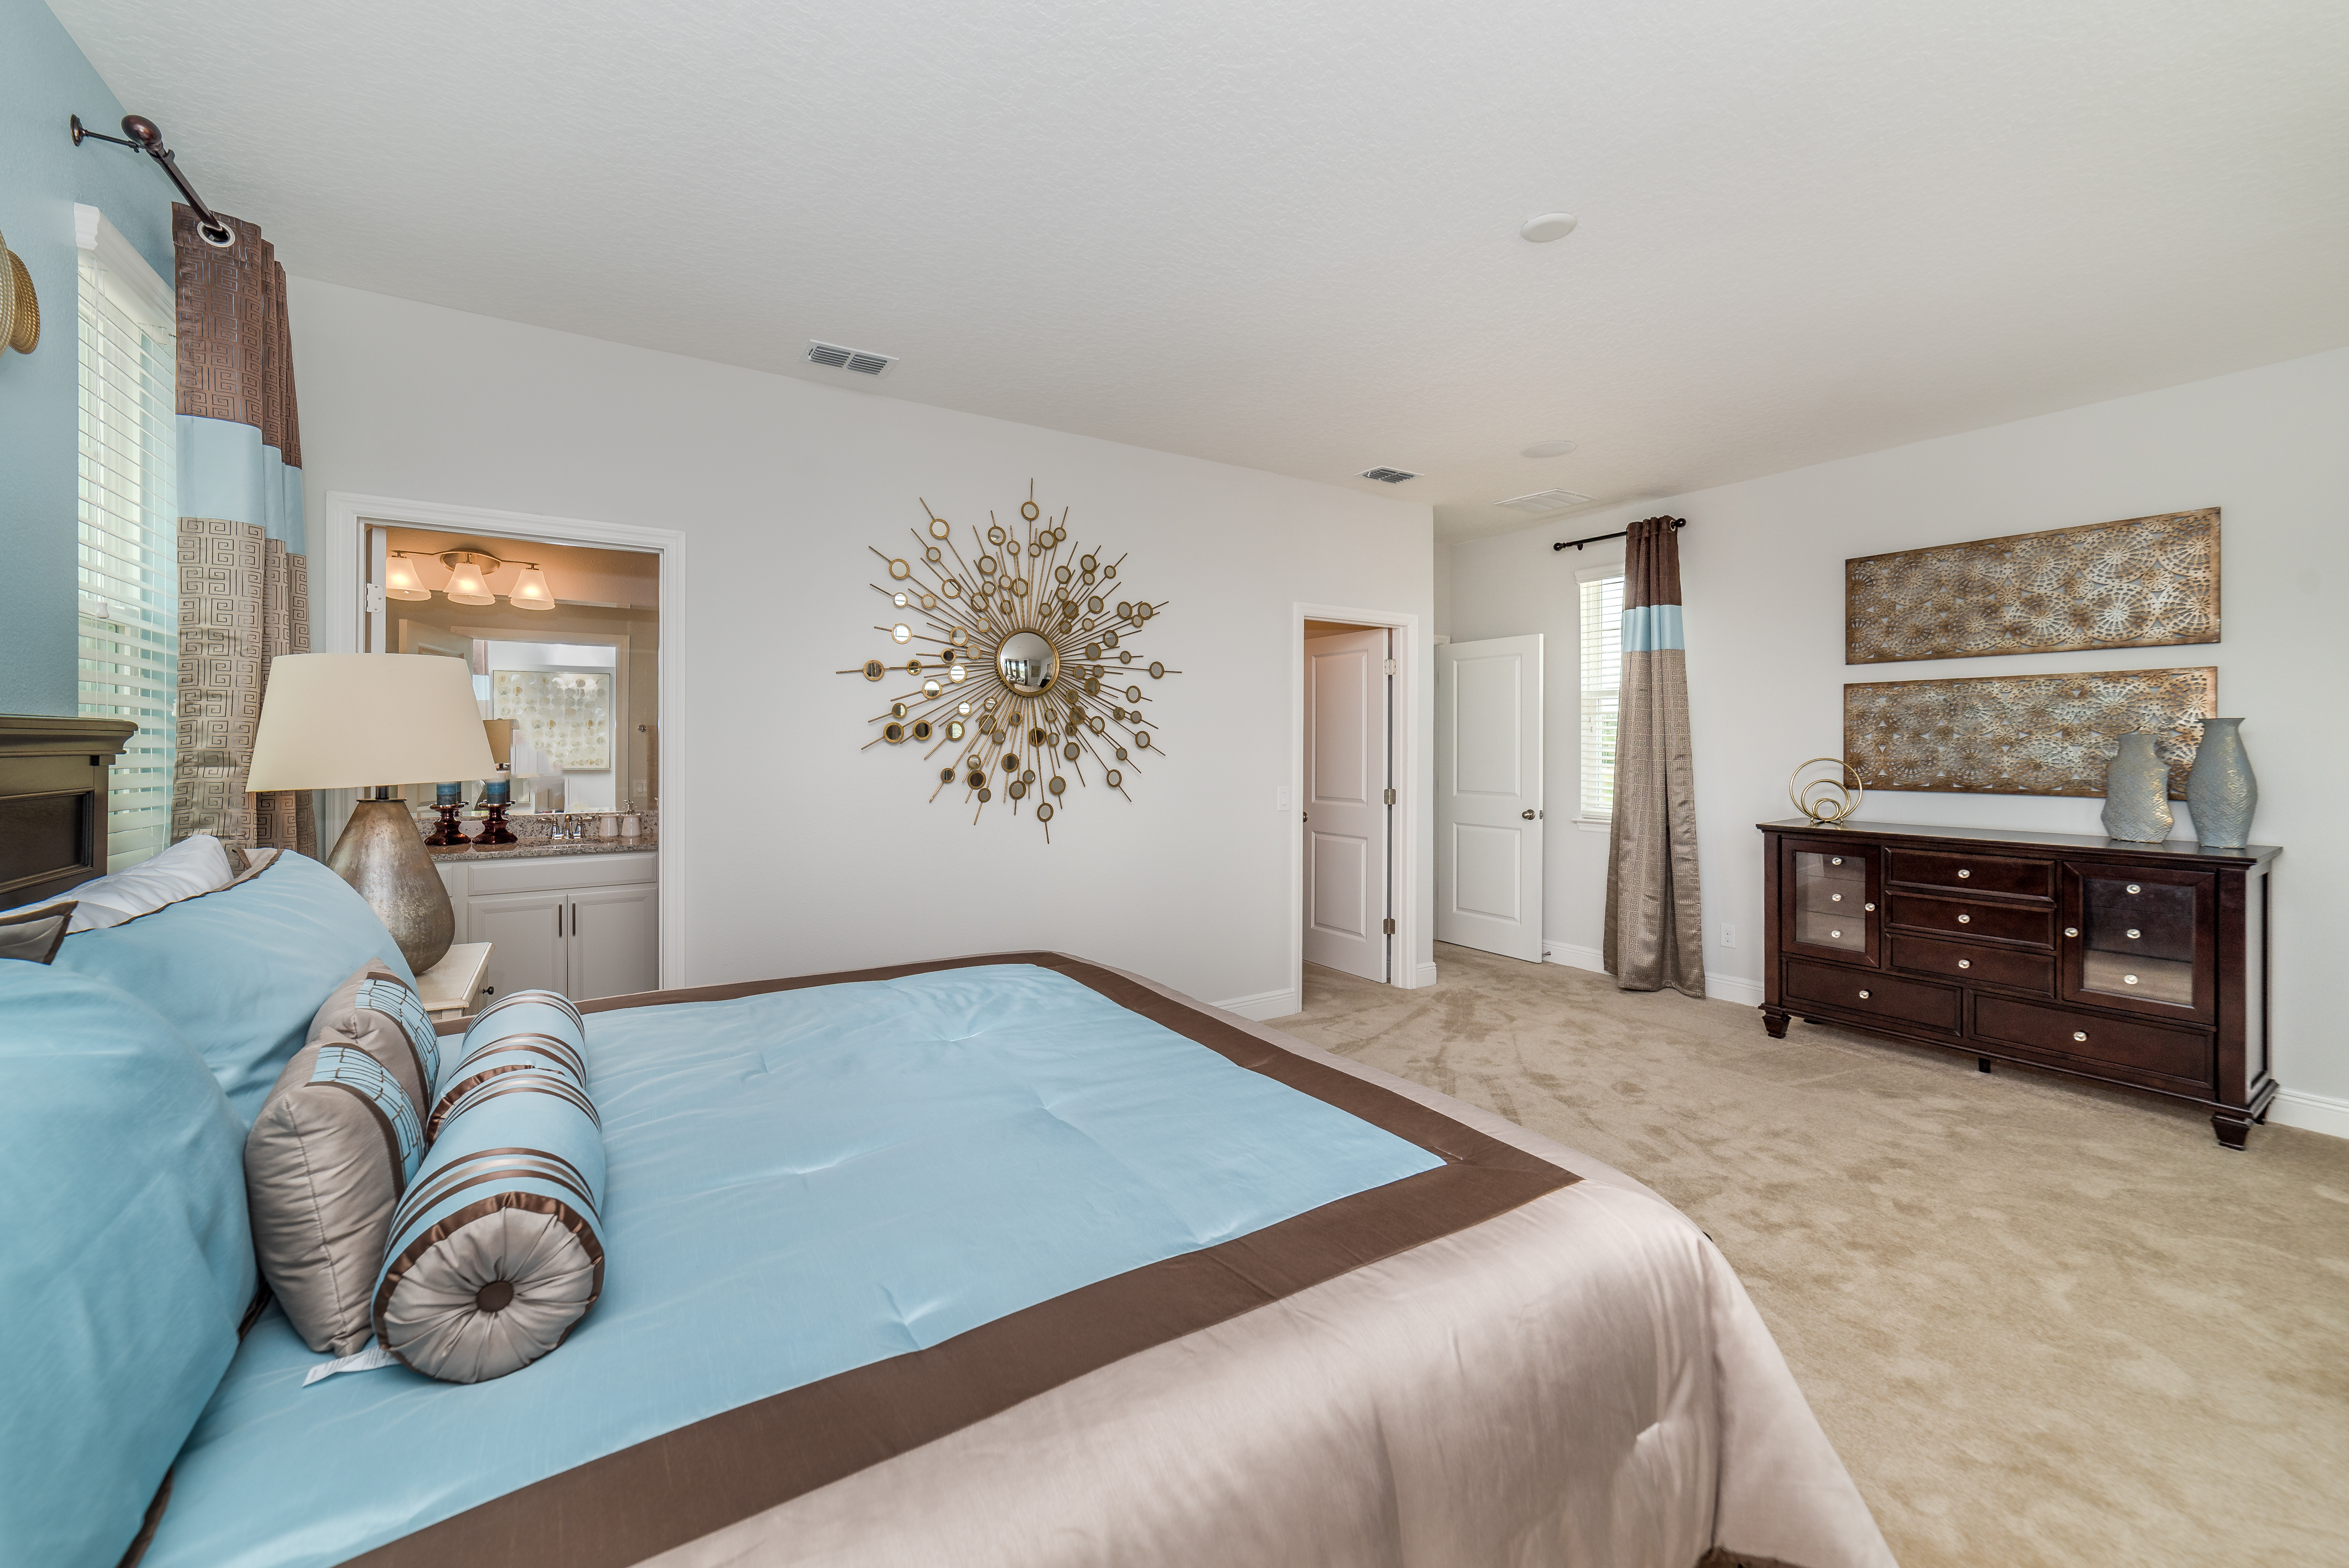 Nova Casa de Luxo  (6 qts / 2 suites) com Piscina Particular - Chelsea Park - $349.000